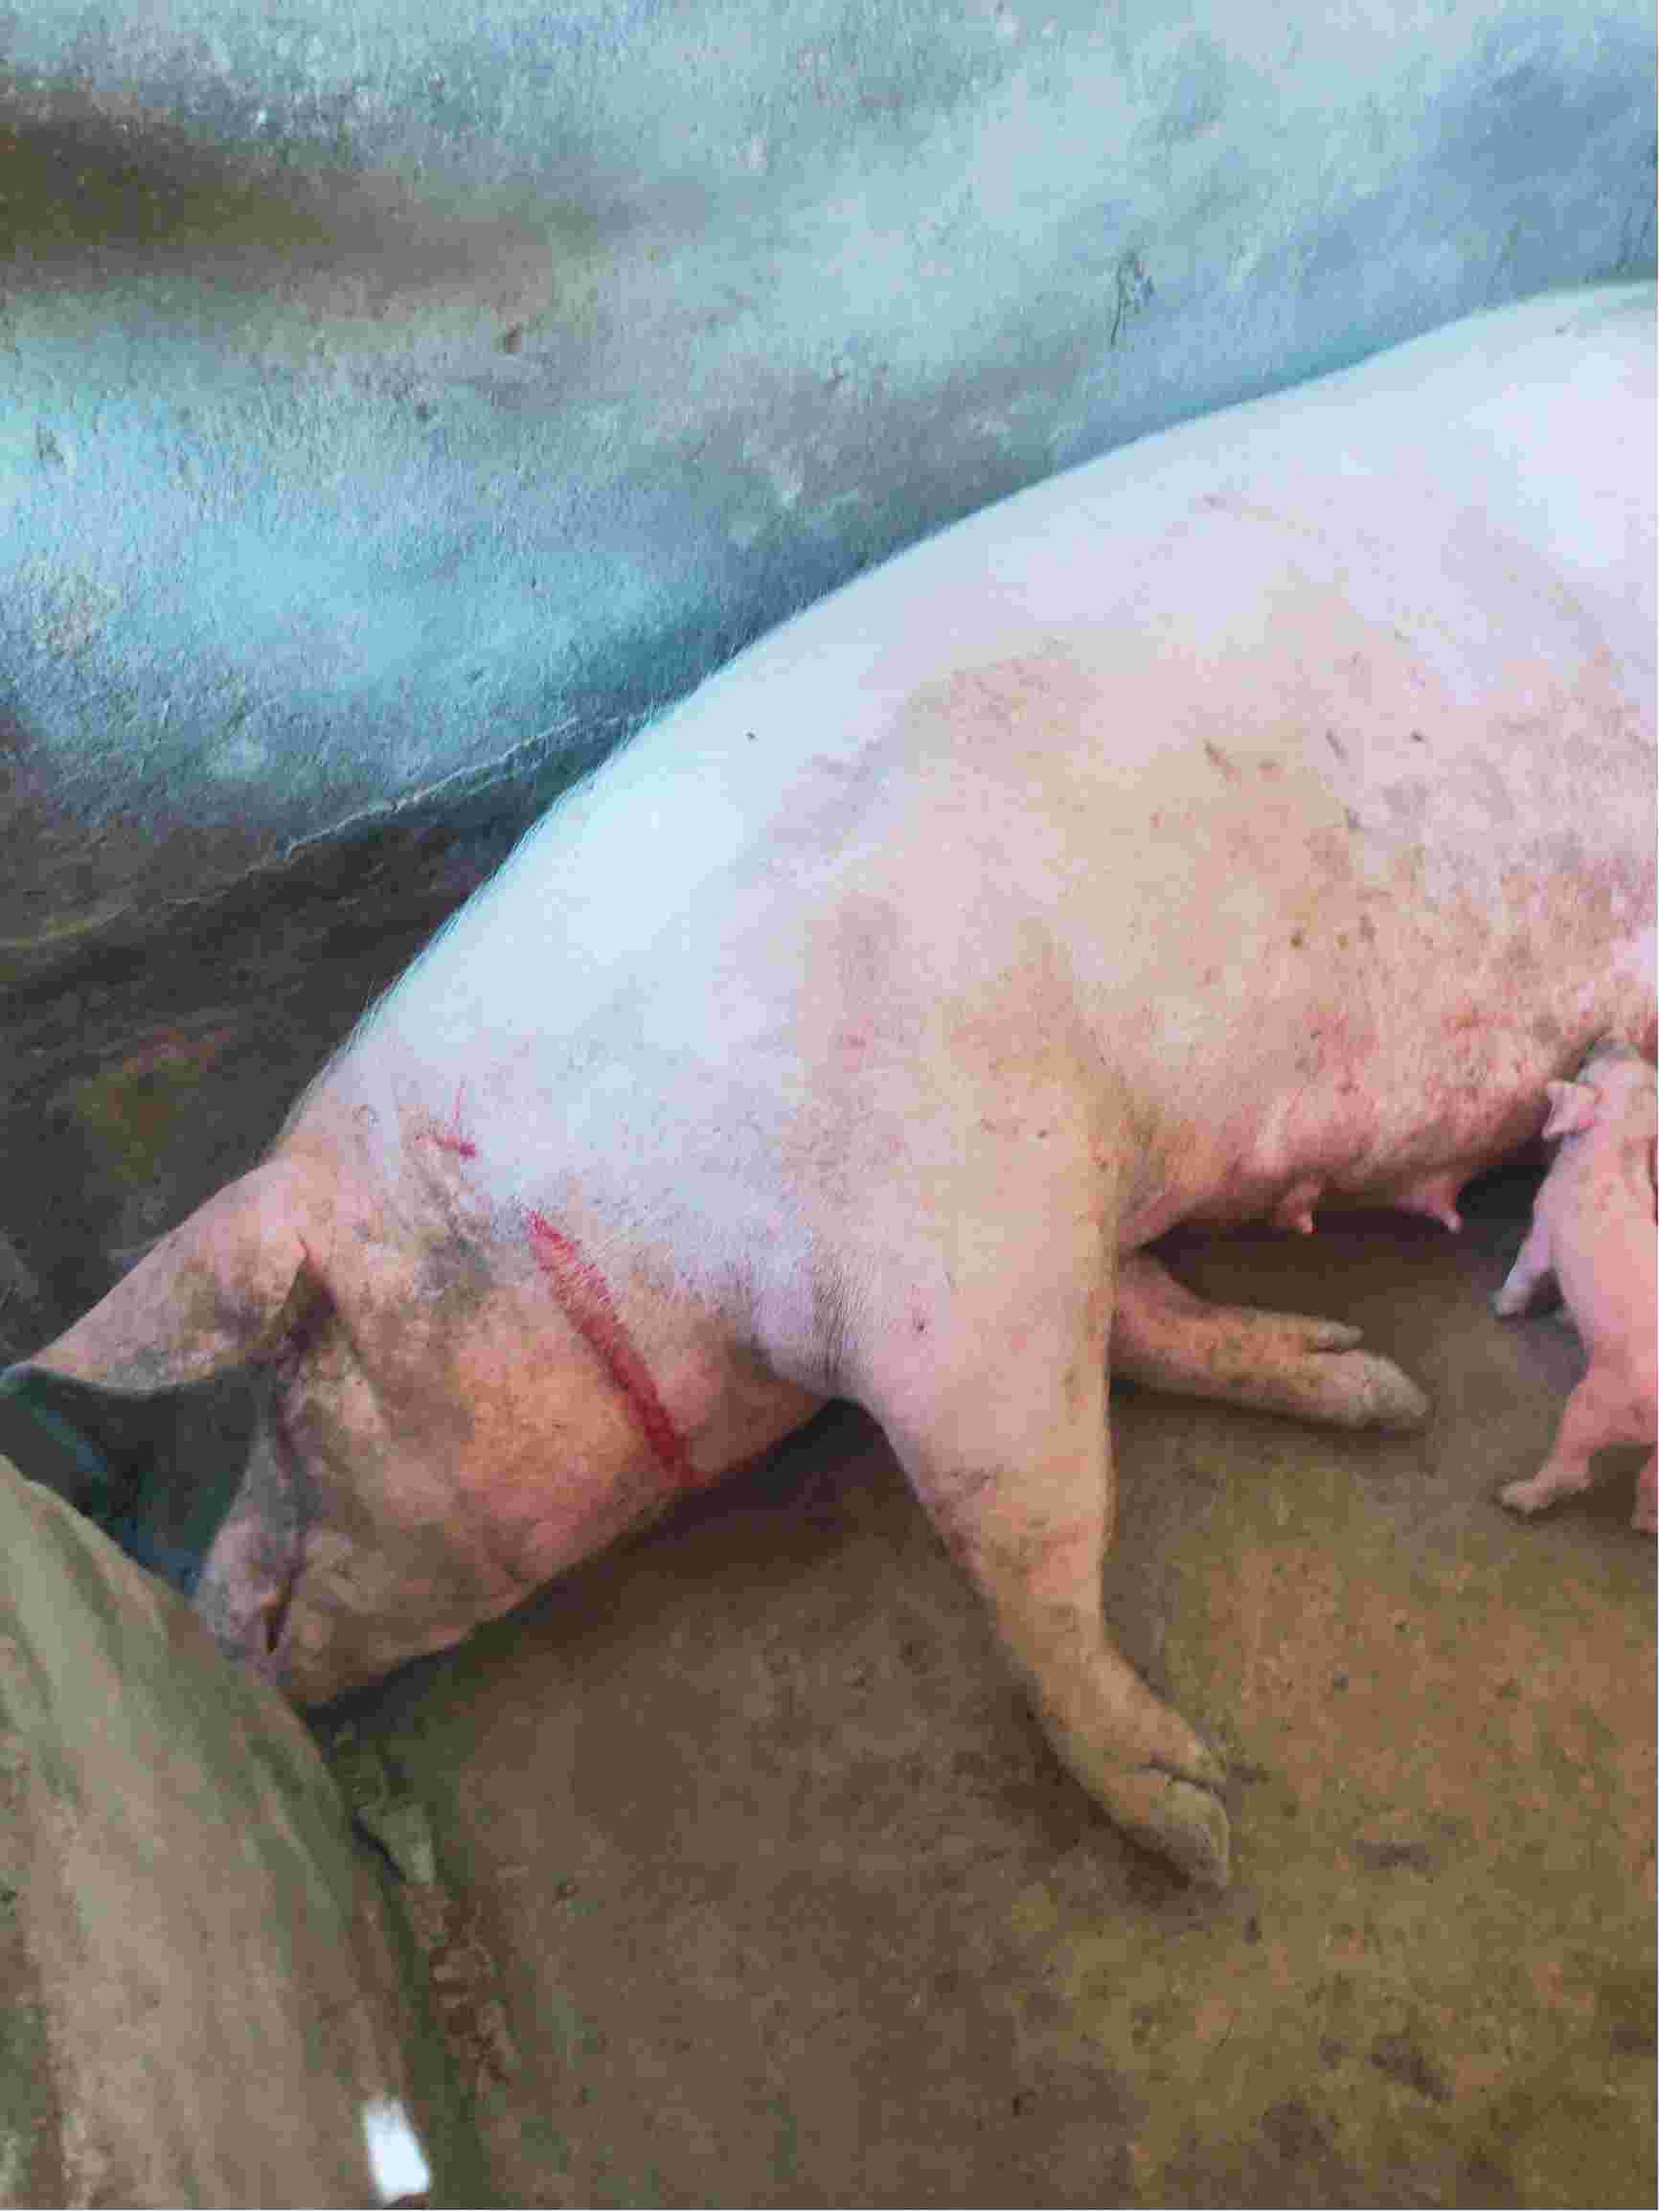 猪瘟有哪些症状 慢性图片